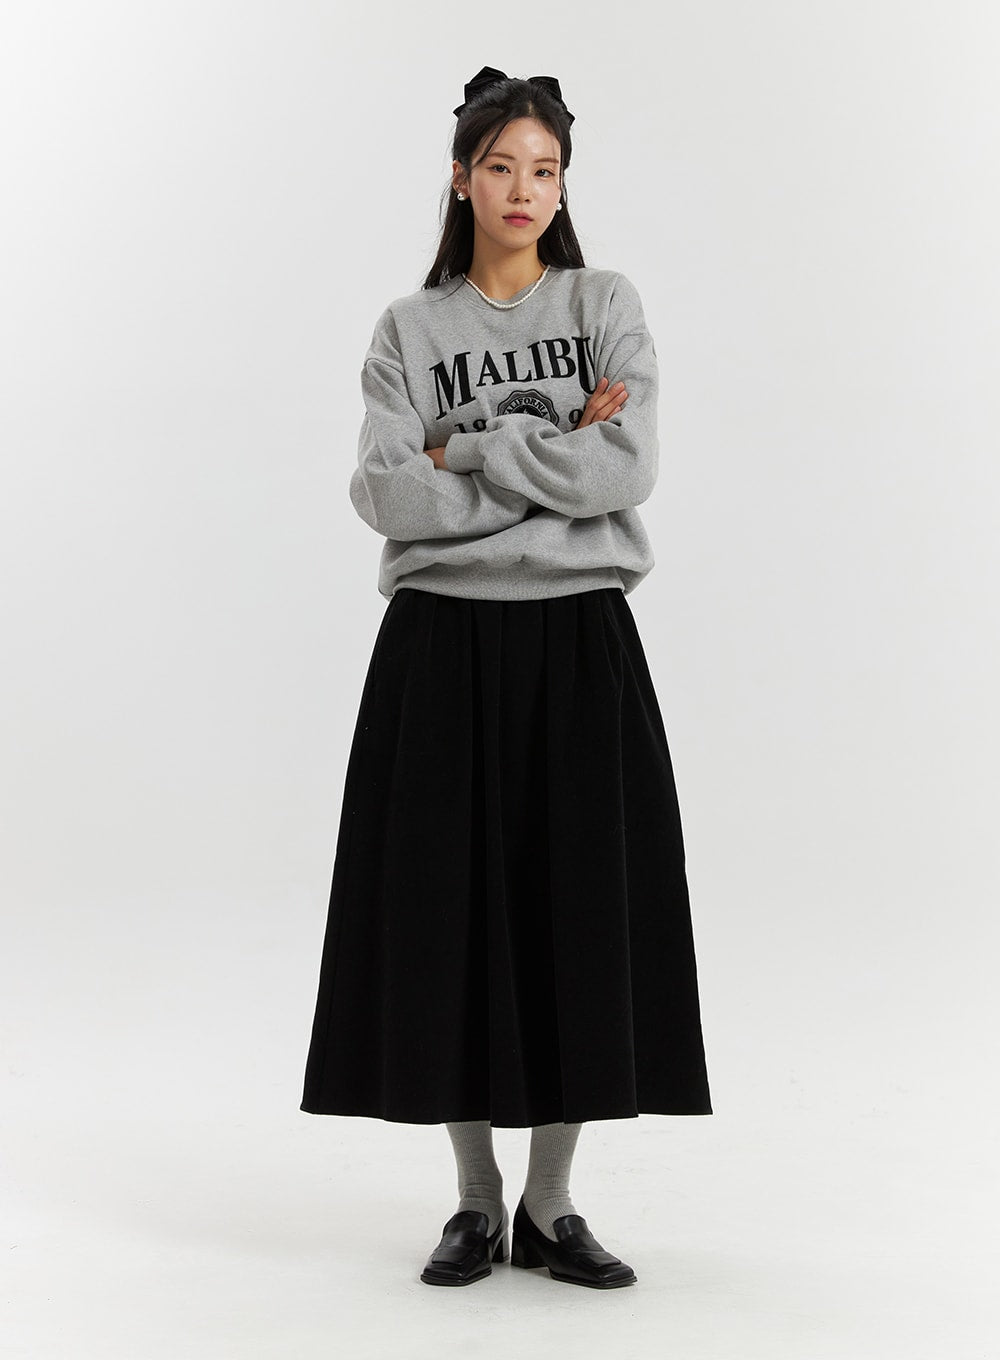 malibu-graphic-lettering-fleece-sweatshirt-cd322